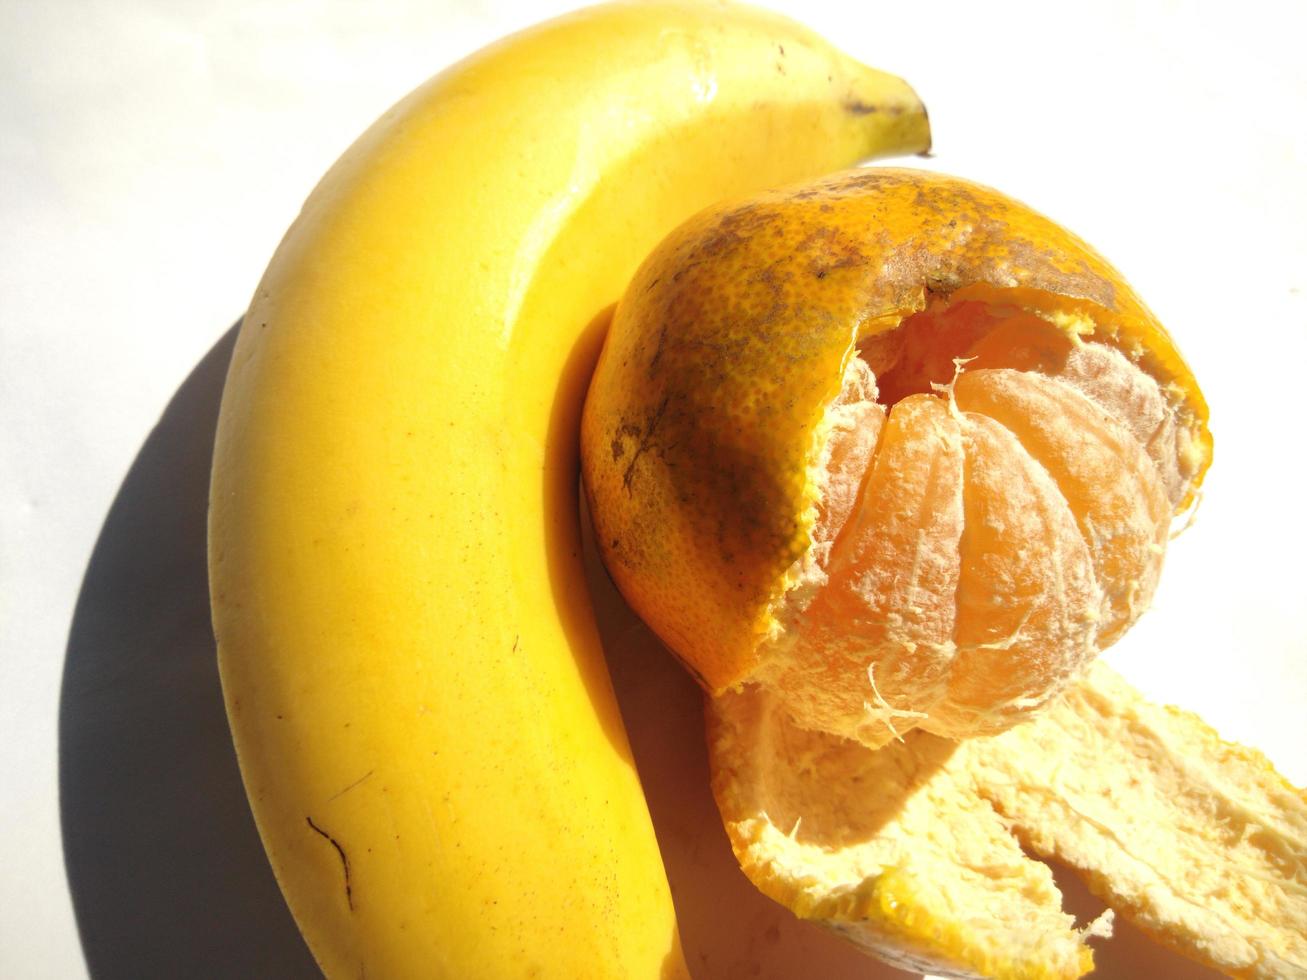 orange und banane isoliert auf einem weißen background.high angle view. foto